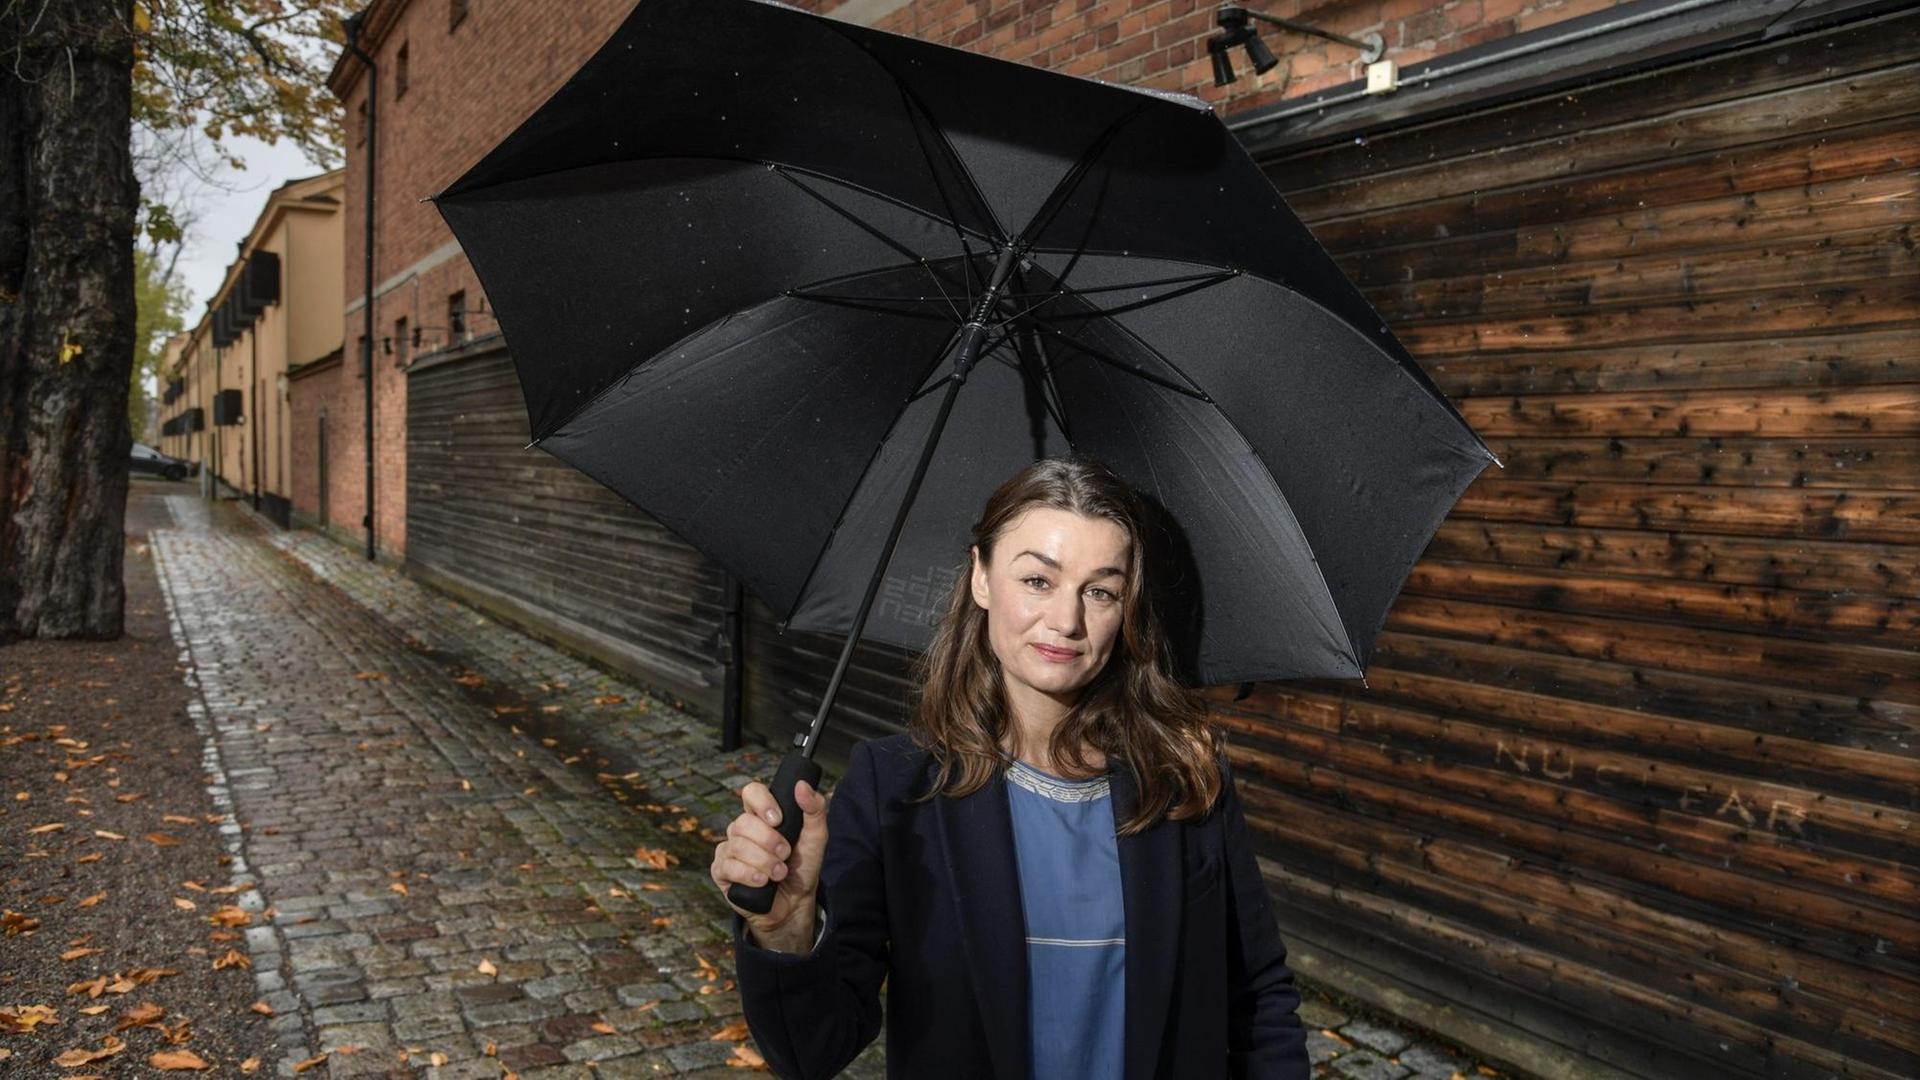 Johanna Adorján hält einen Regenschirm über sich.